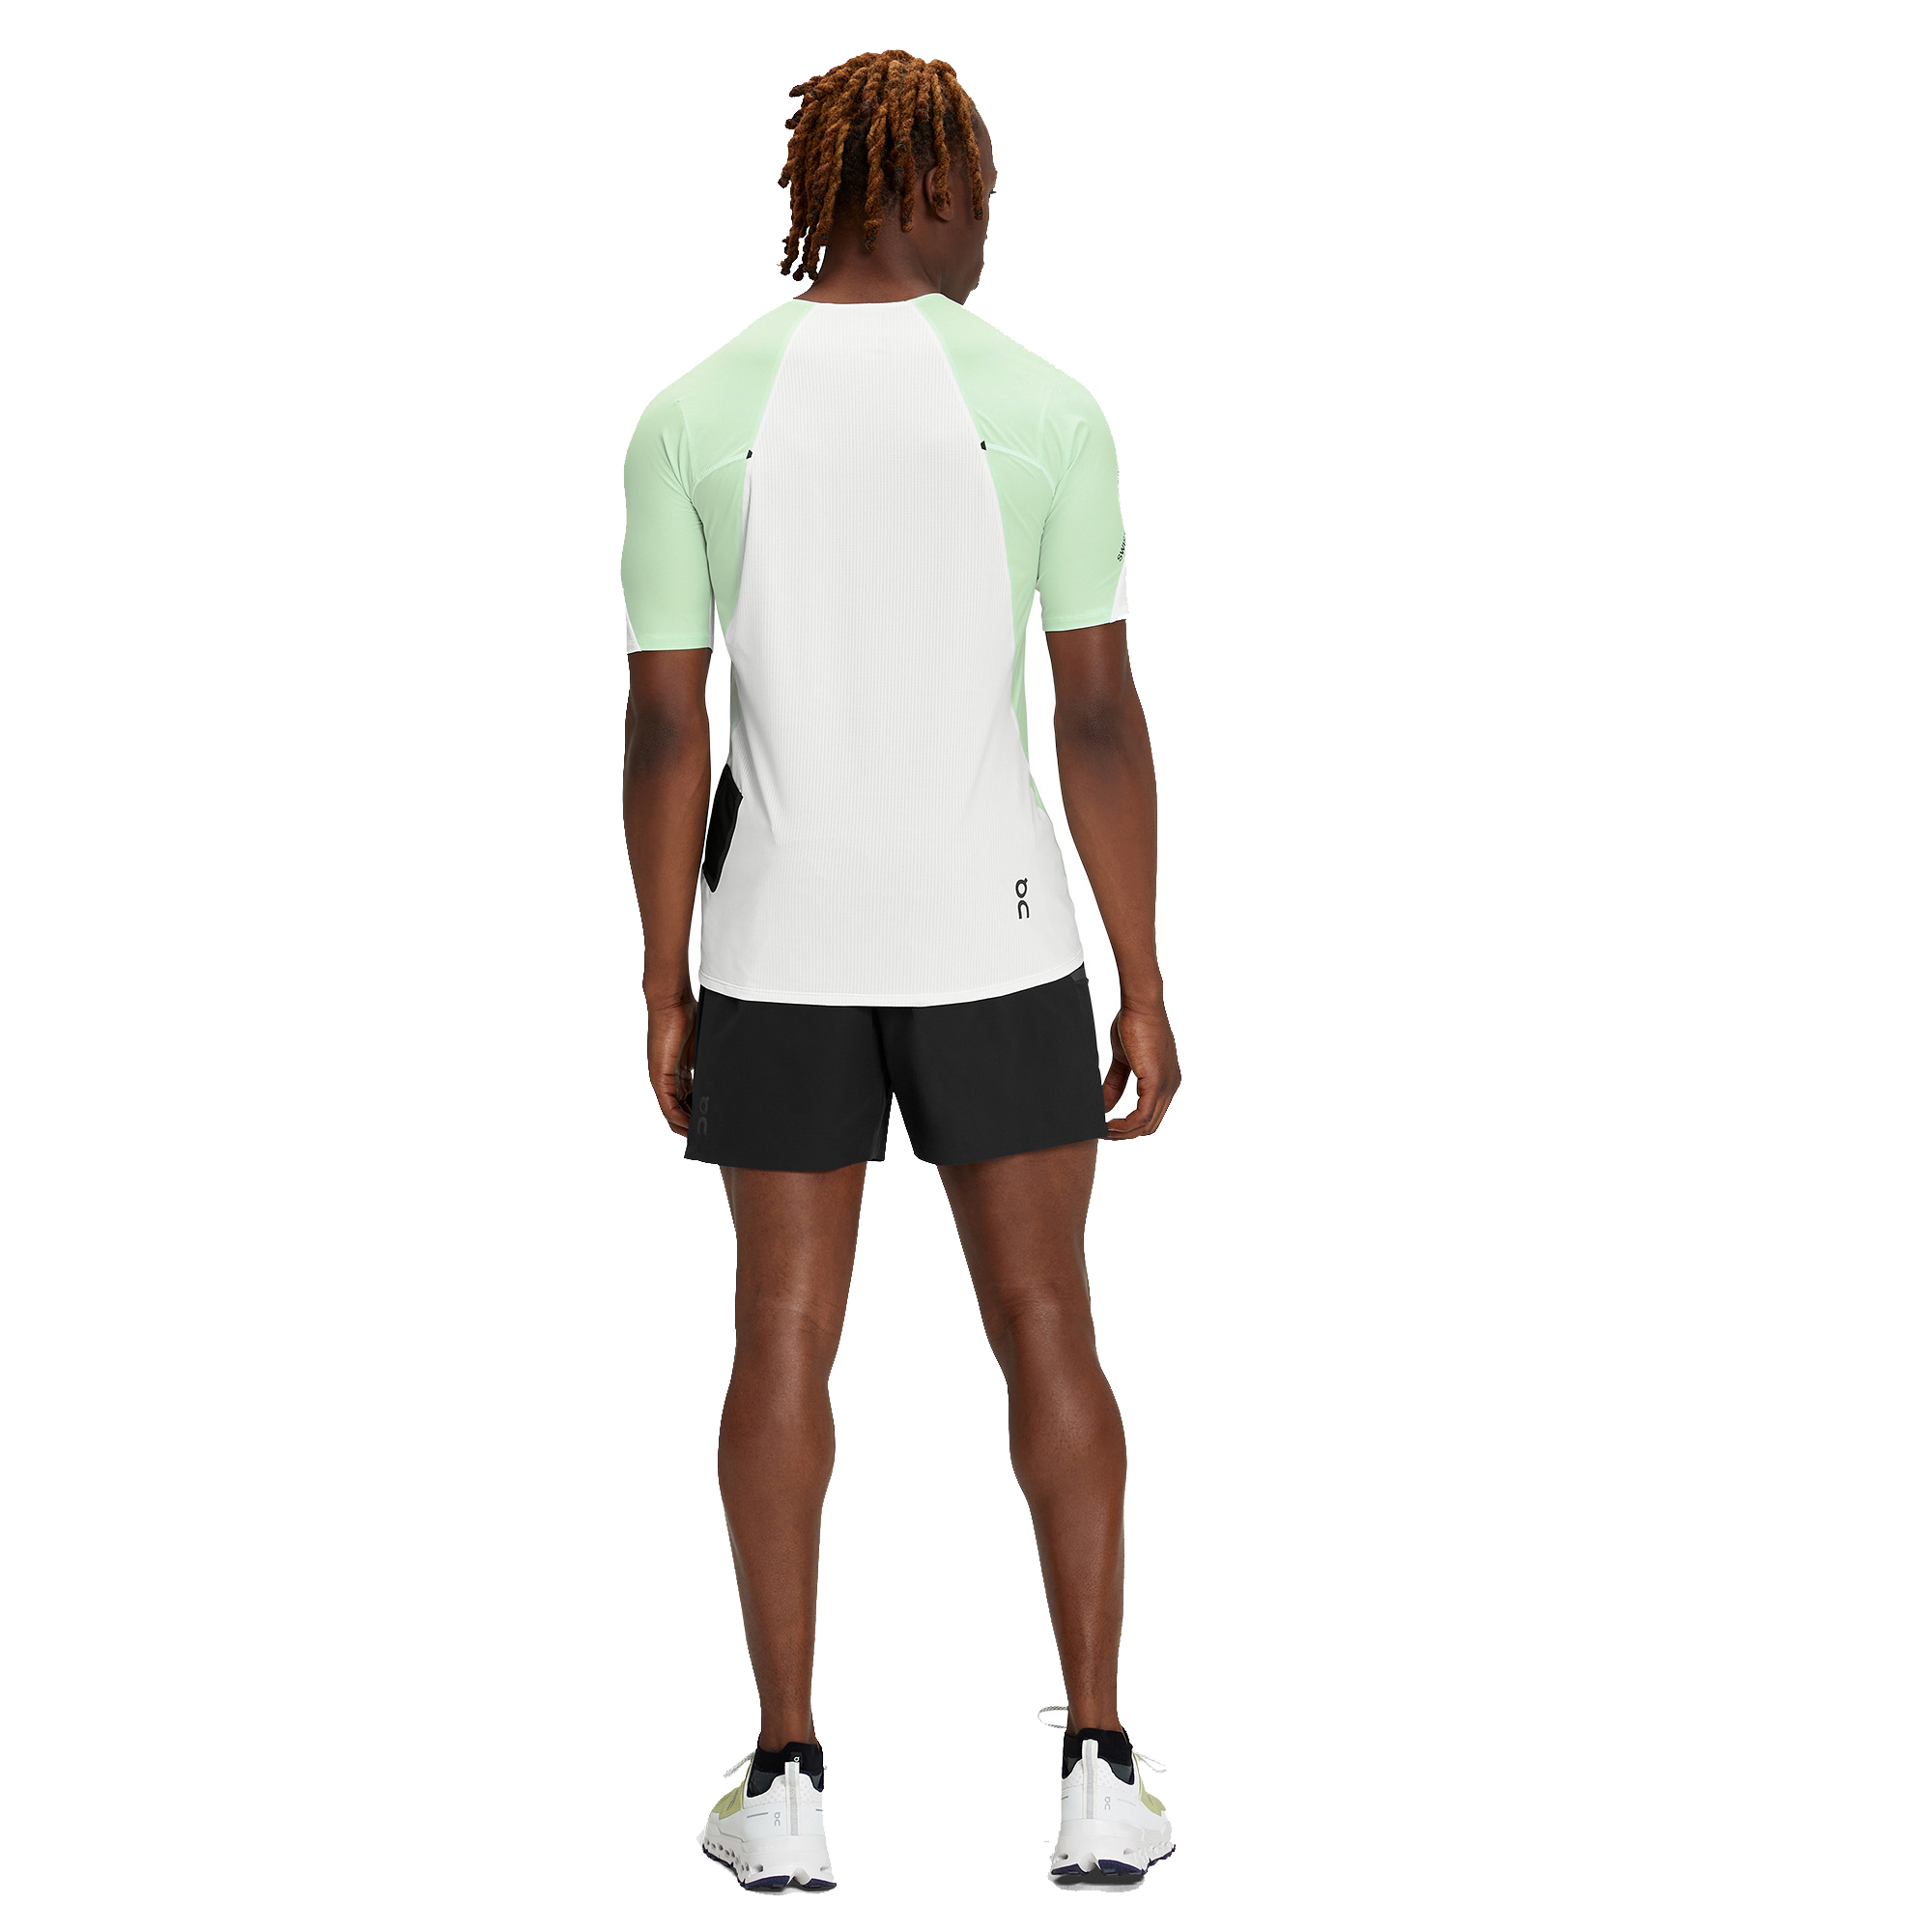 On Ultra Men's Running & Fitness Shorts